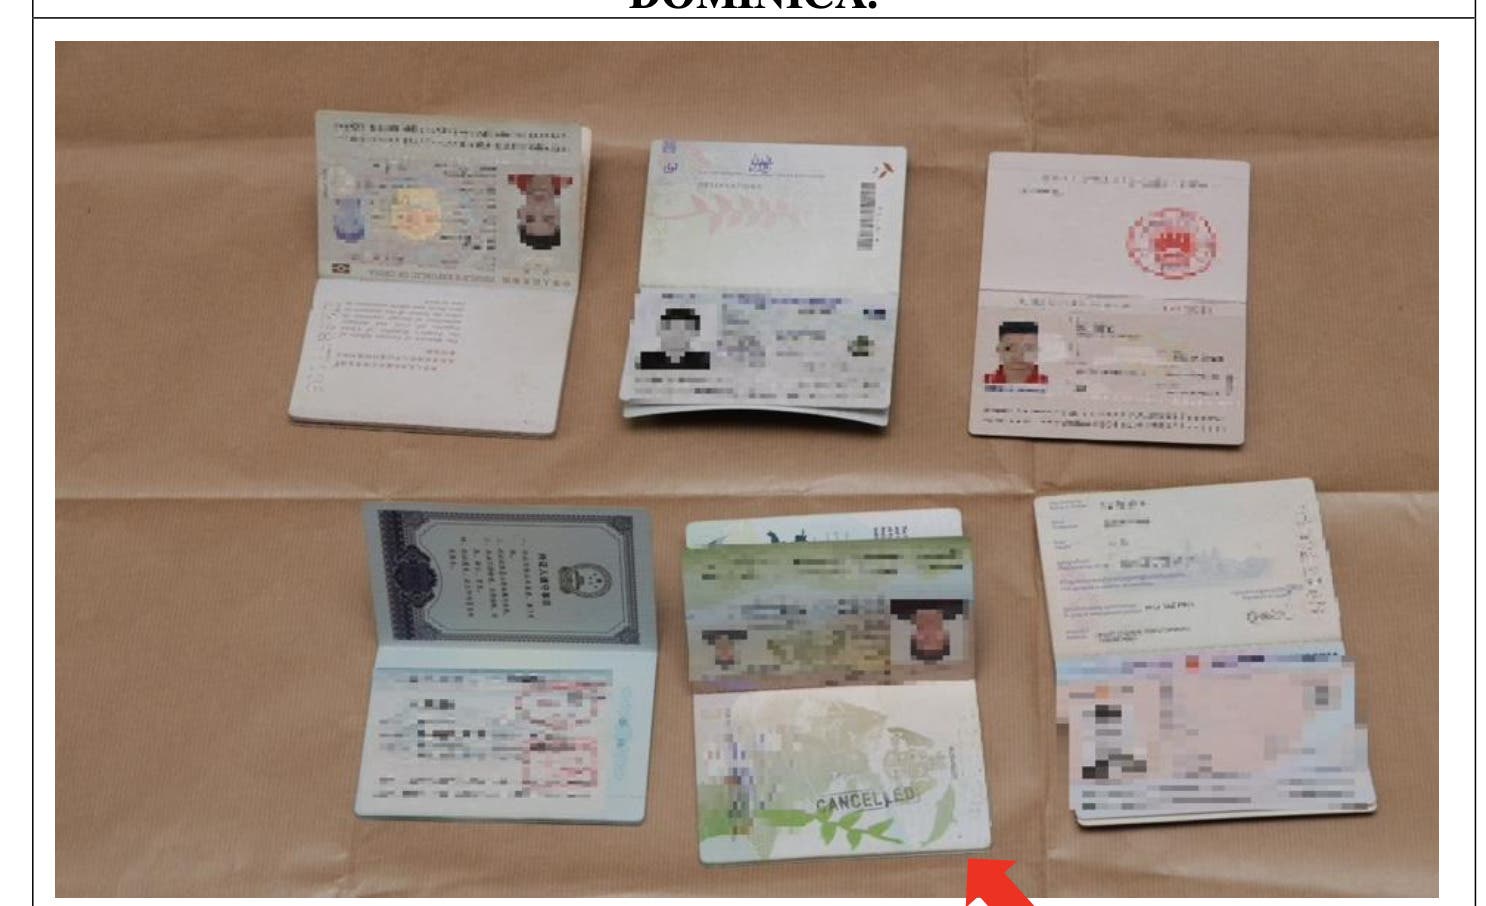 Son de Dominica y no de República Dominicana pasaportes falsos incautados en Singapur